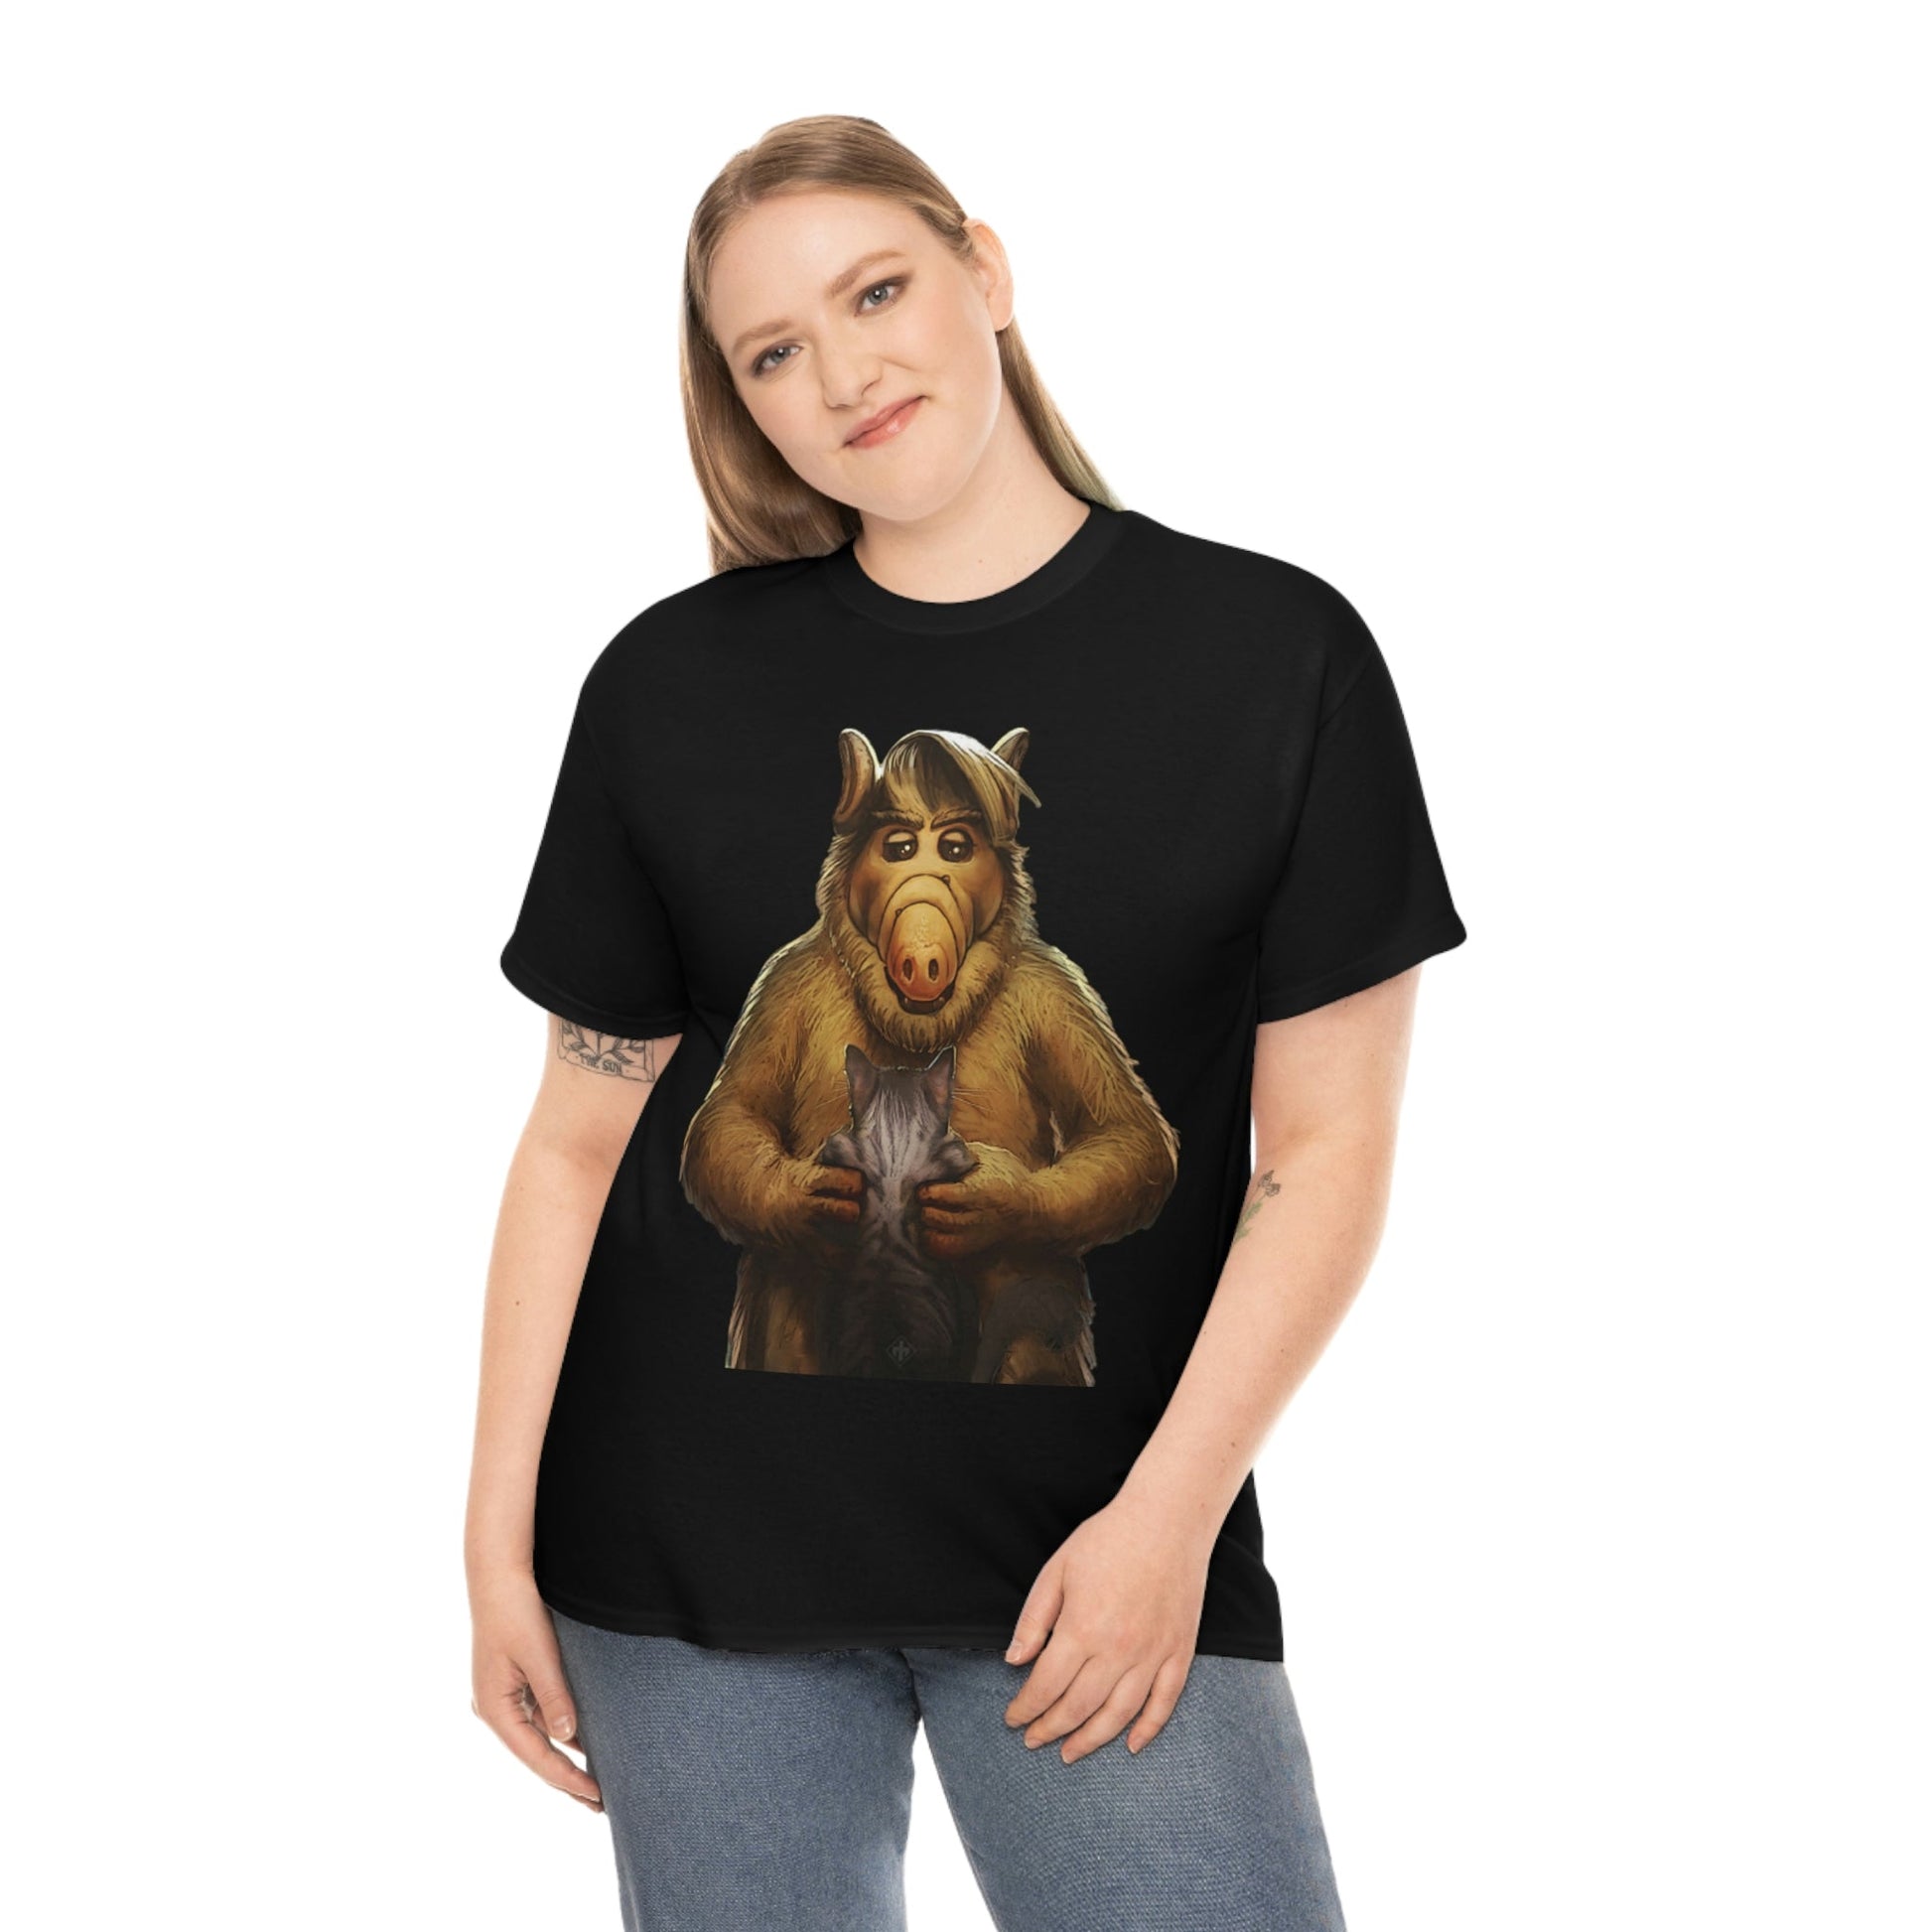 Alf T-Shirt - RetroTeeShop